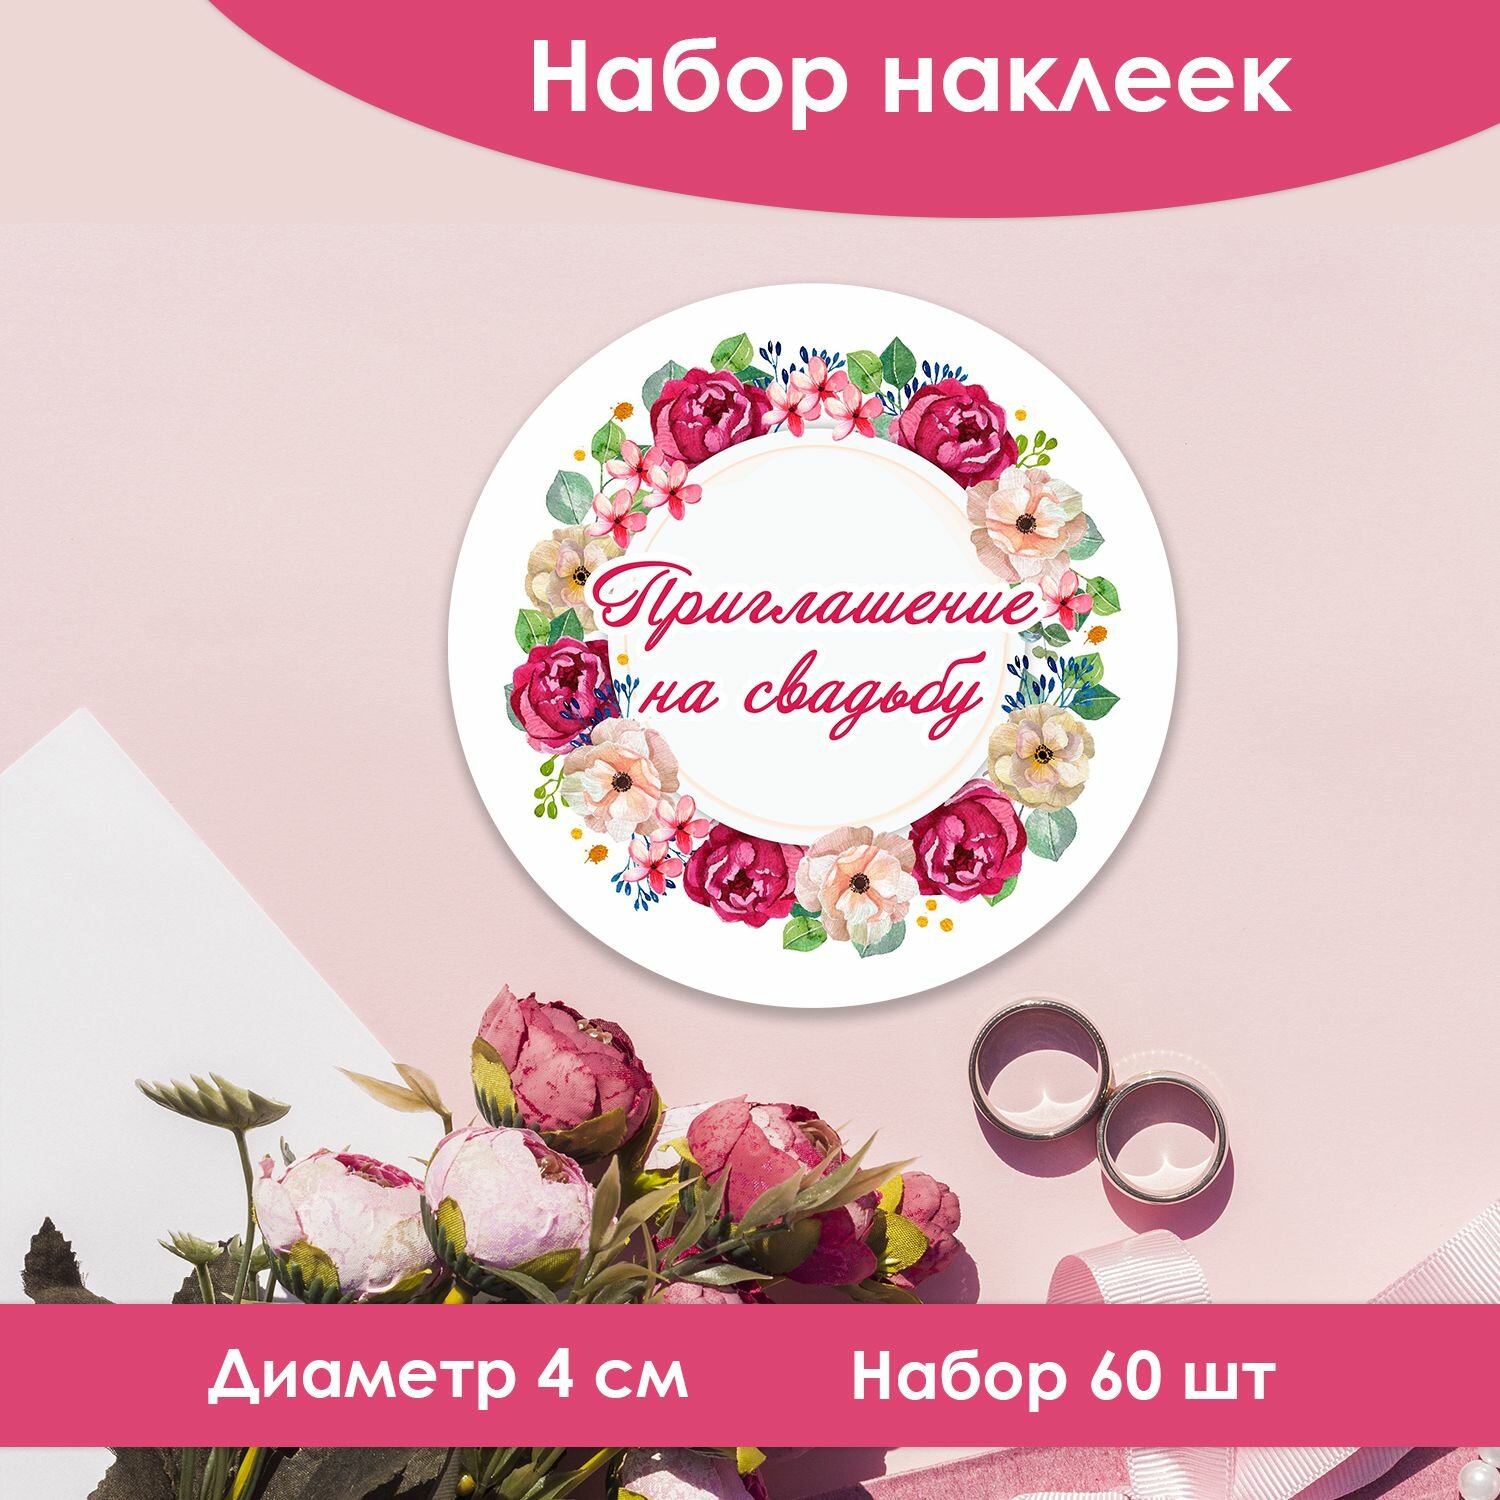 Наклейки-стикеры круглые приглашение на свадьбу, d 4 cм (60 шт)